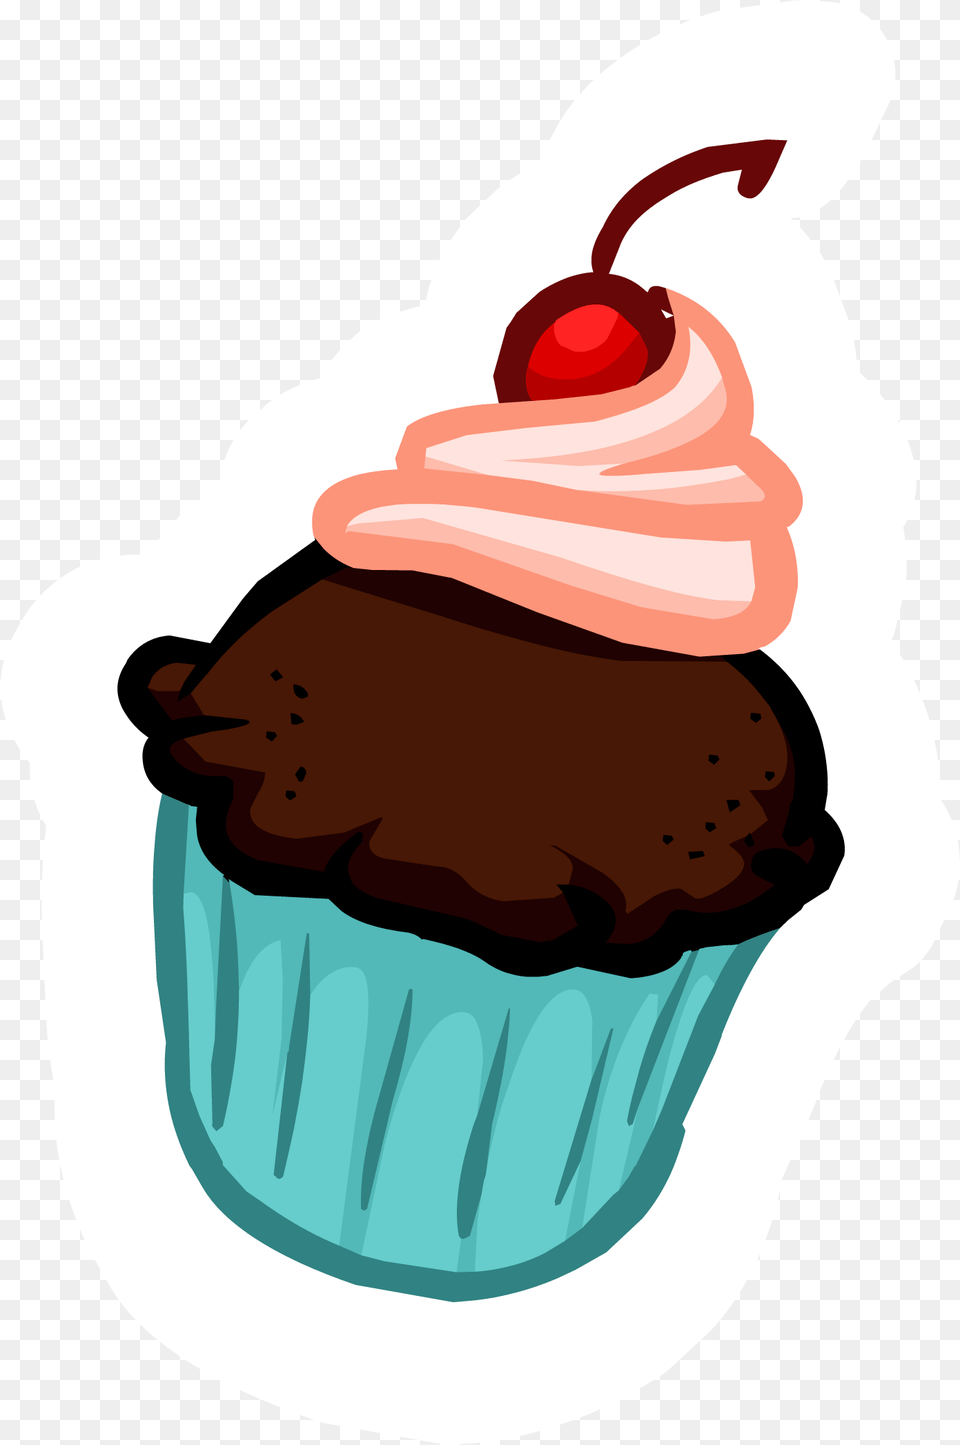 Club Penguin Rewritten Wiki Cupcake Thumbnail, Food, Cake, Cream, Dessert Free Transparent Png